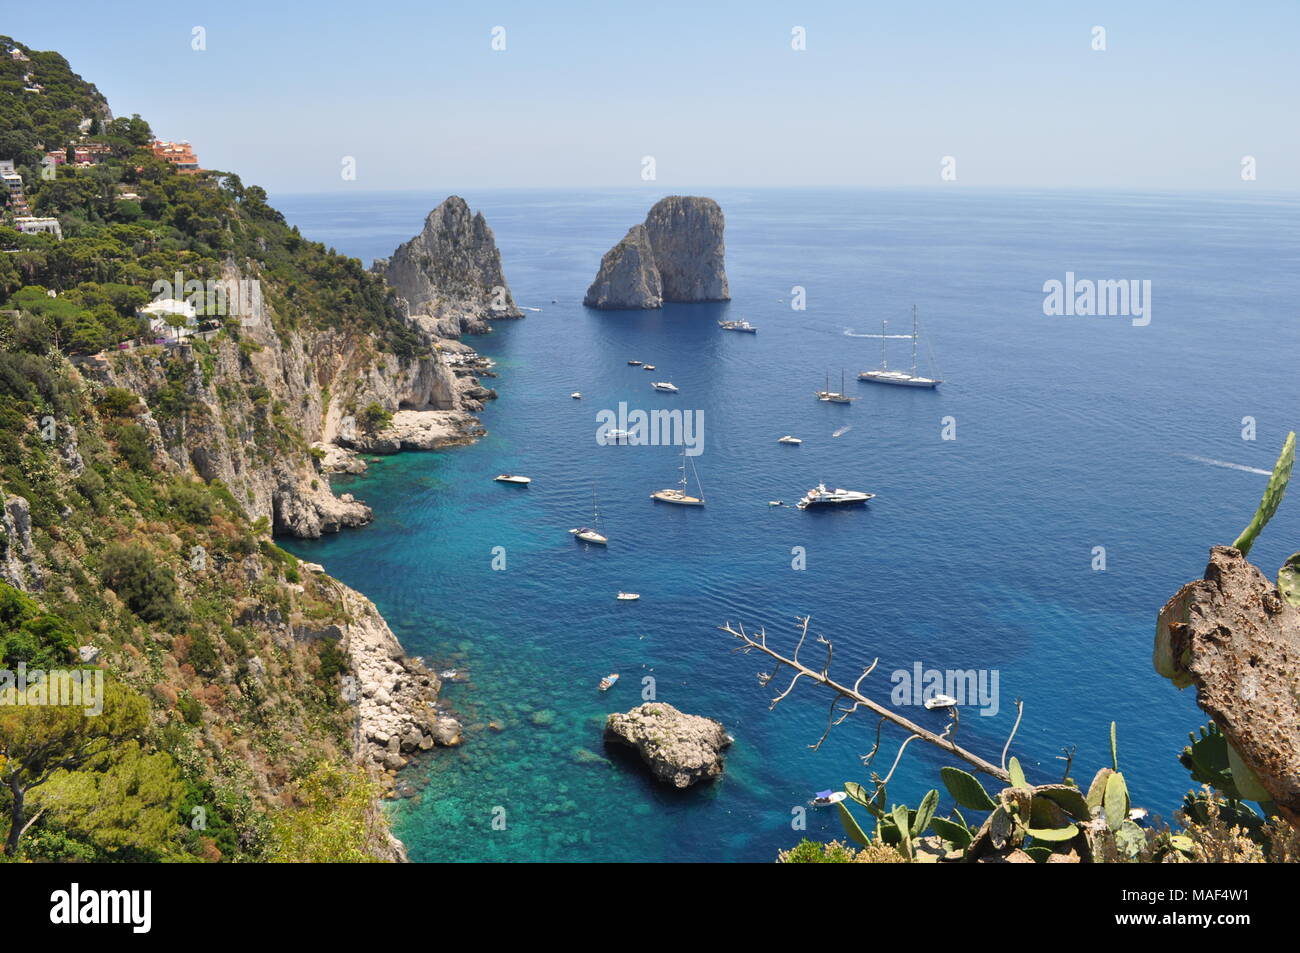 Bay, Klippen und türkis blauen Wasser der Insel Capri, Italien Stockfoto